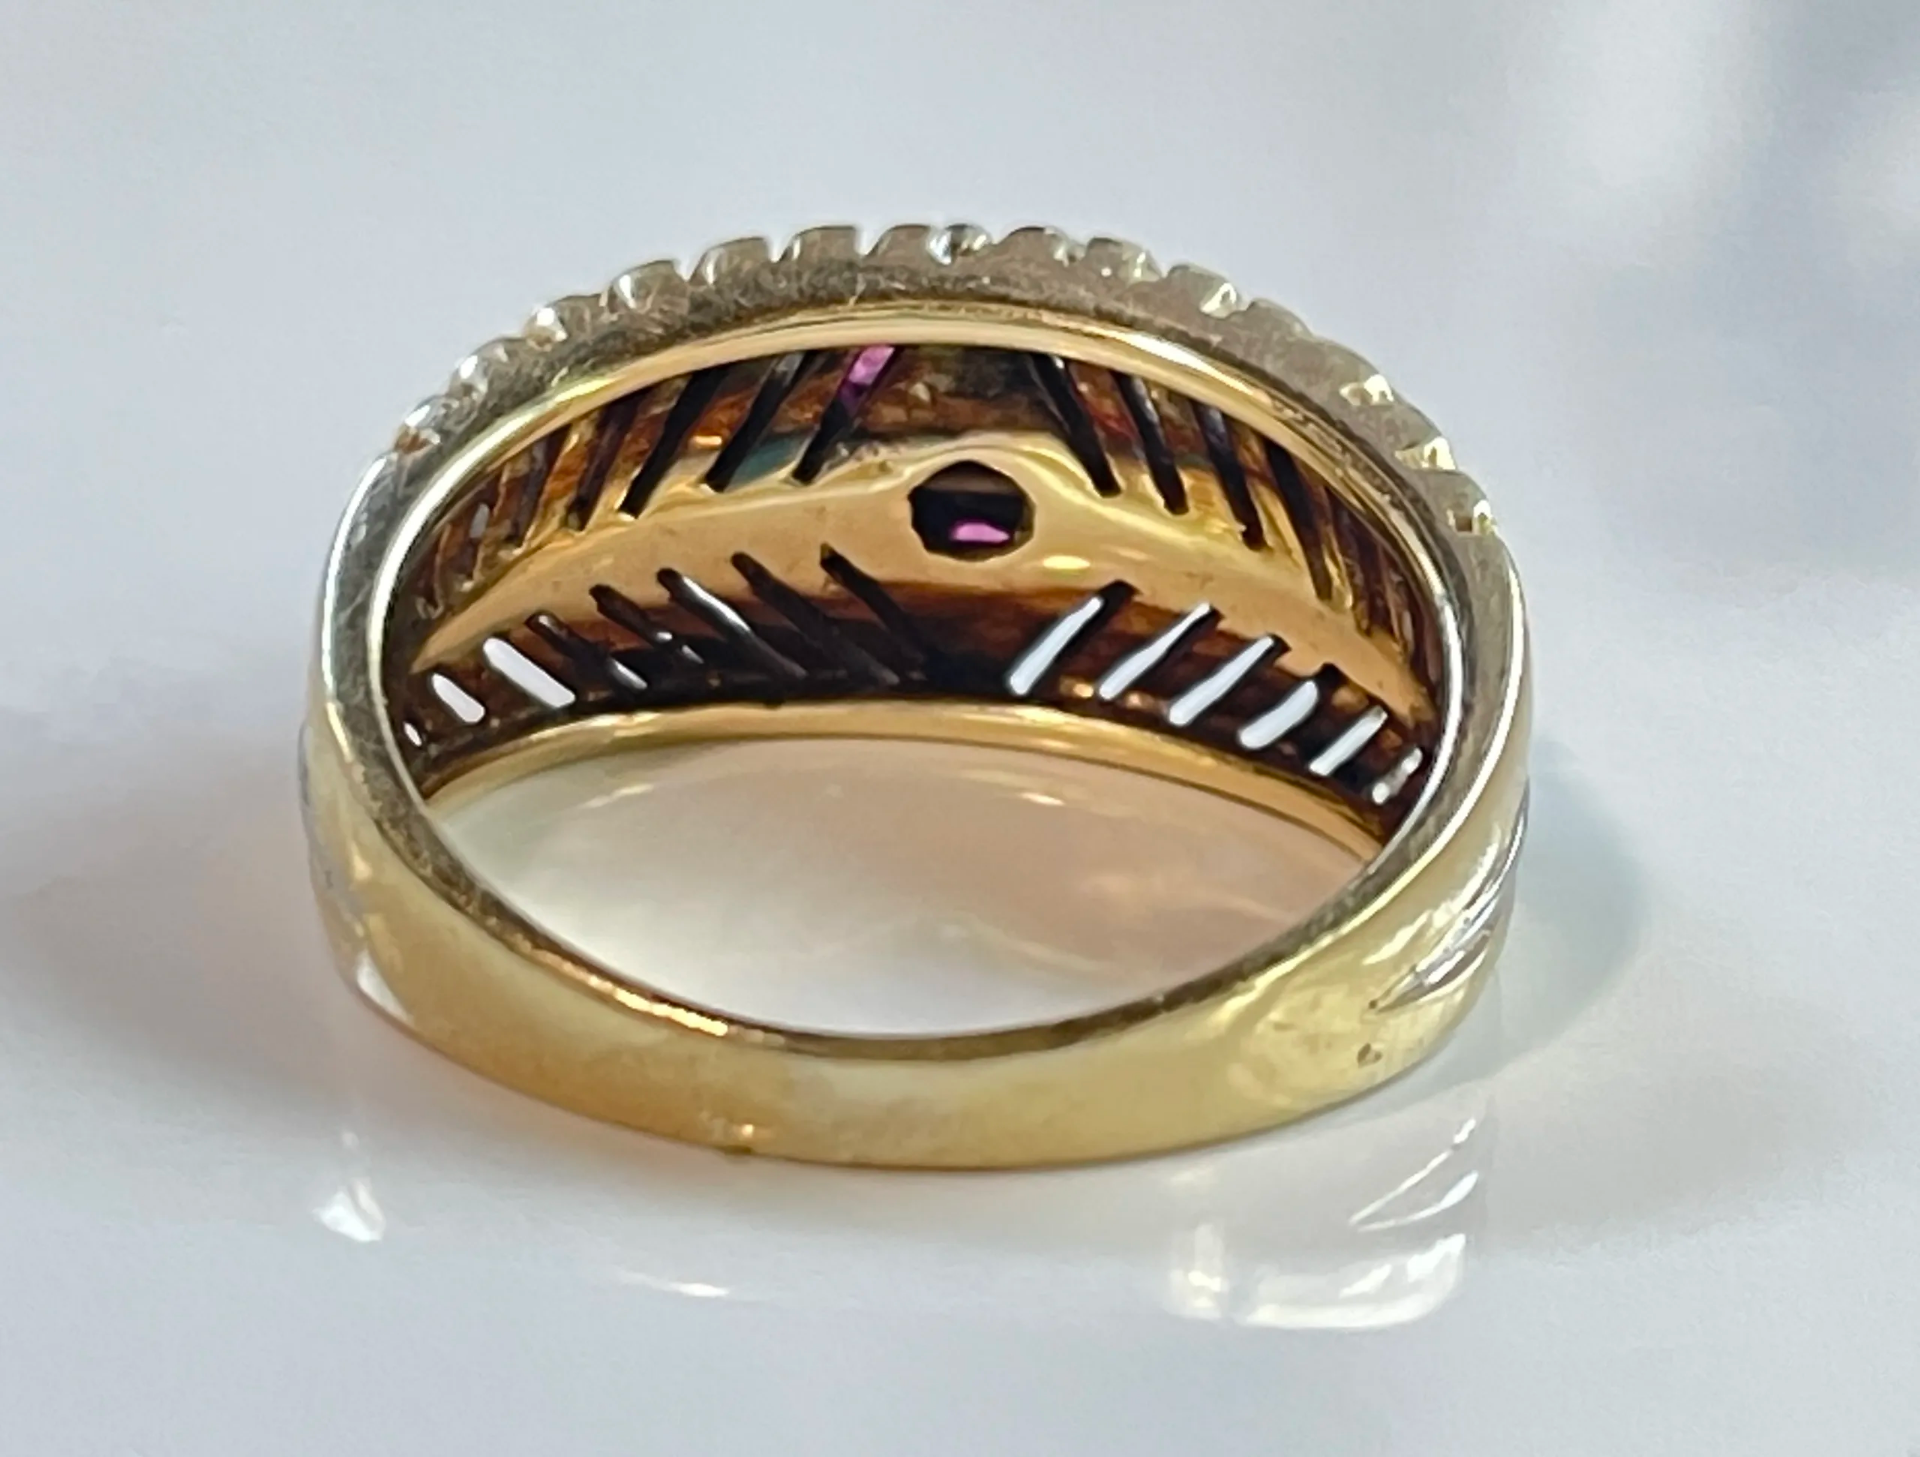 Vintage Rubin Ring mit diamanten. 585 / 750 Gold - Bild 4 aus 4